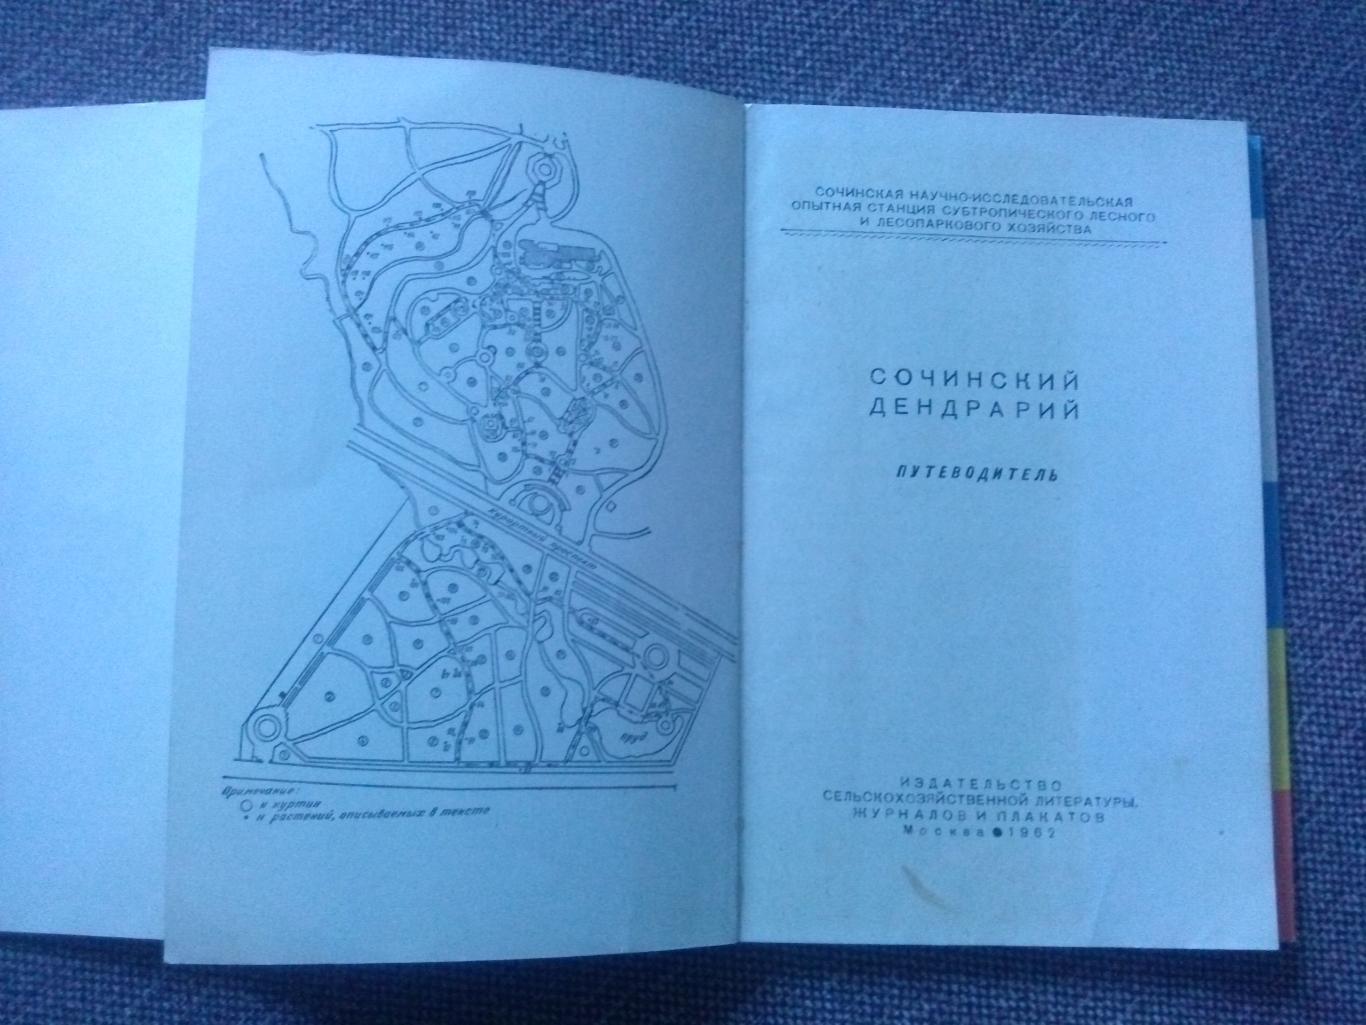 Путеводитель : Сочинский дендрарий 1962 г. (суперобложка) Сочи флора Кавказ 2